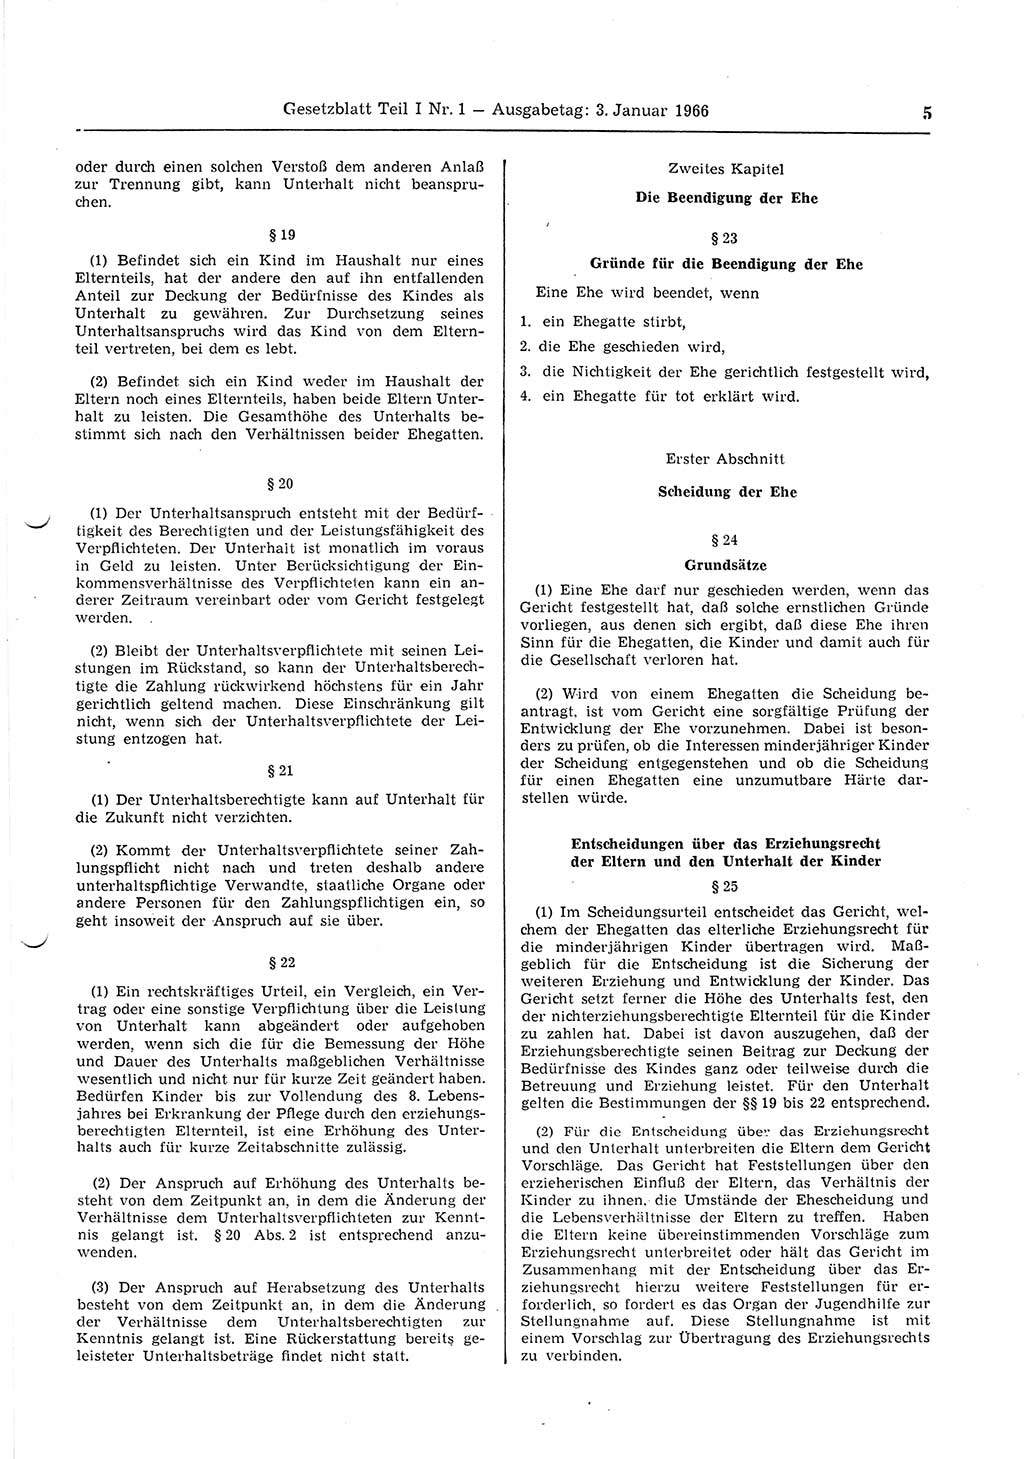 Gesetzblatt (GBl.) der Deutschen Demokratischen Republik (DDR) Teil Ⅰ 1966, Seite 5 (GBl. DDR Ⅰ 1966, S. 5)